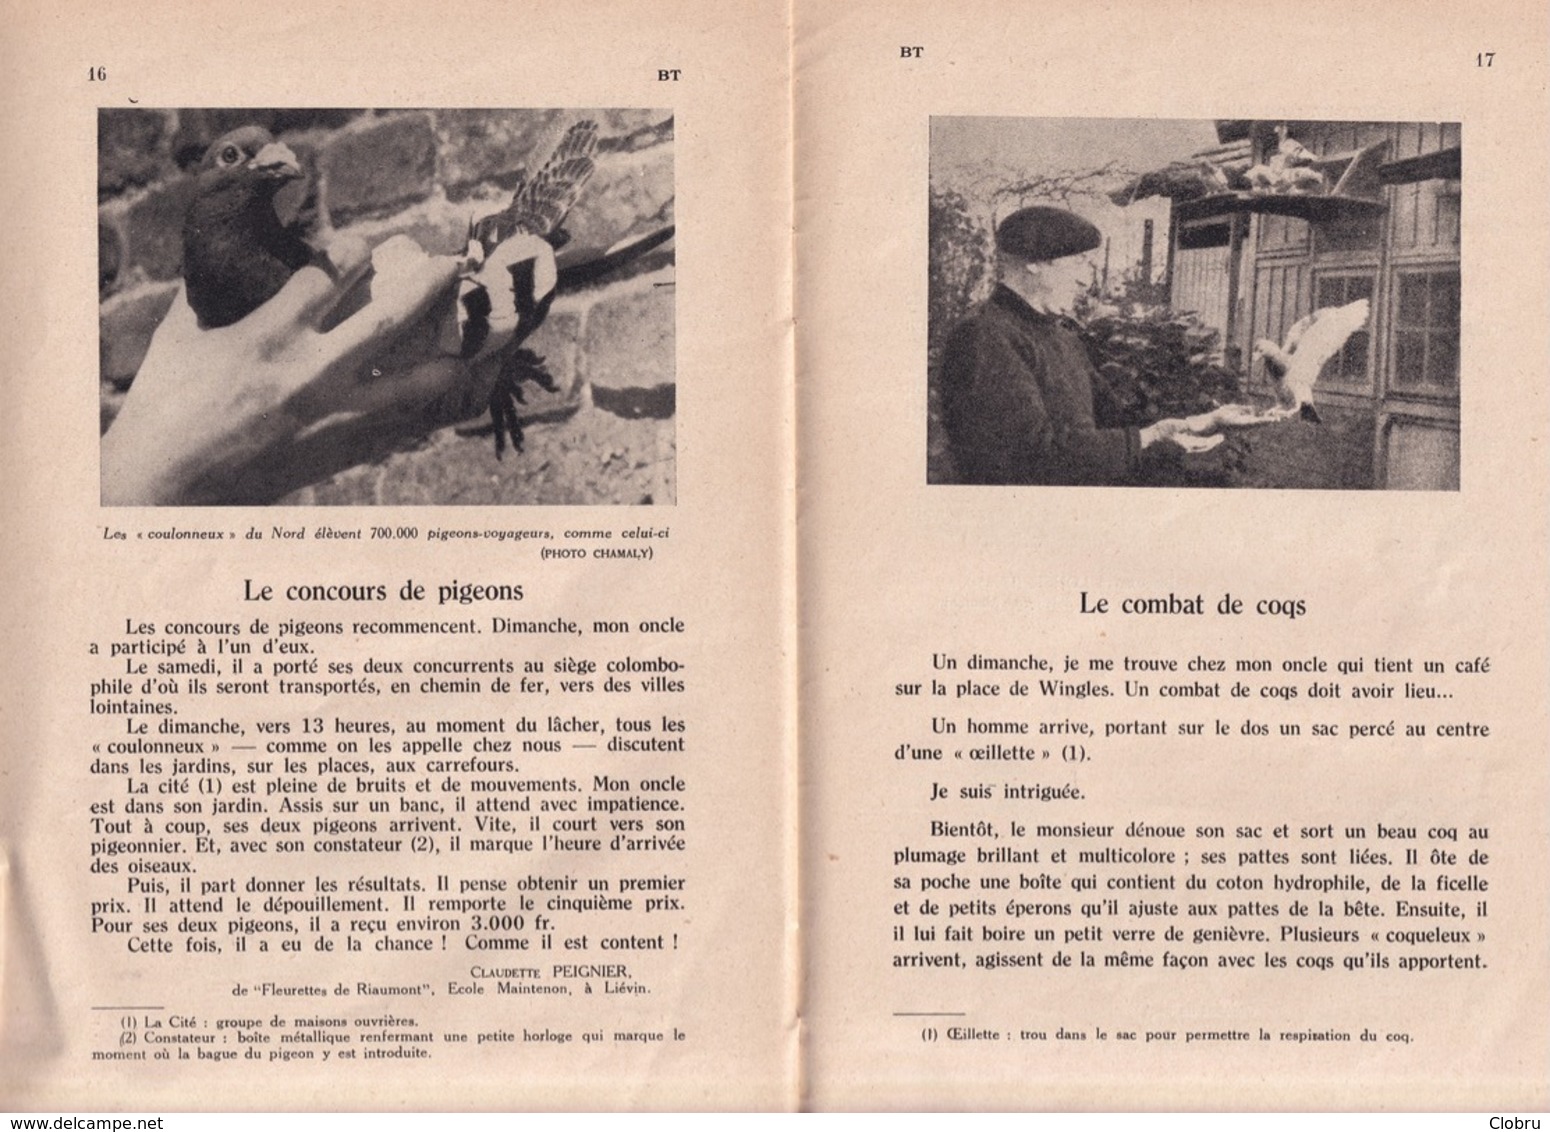 Bibliothèque De Travail, N° 281, Au Pays Noir 1954 - 6-12 Anni